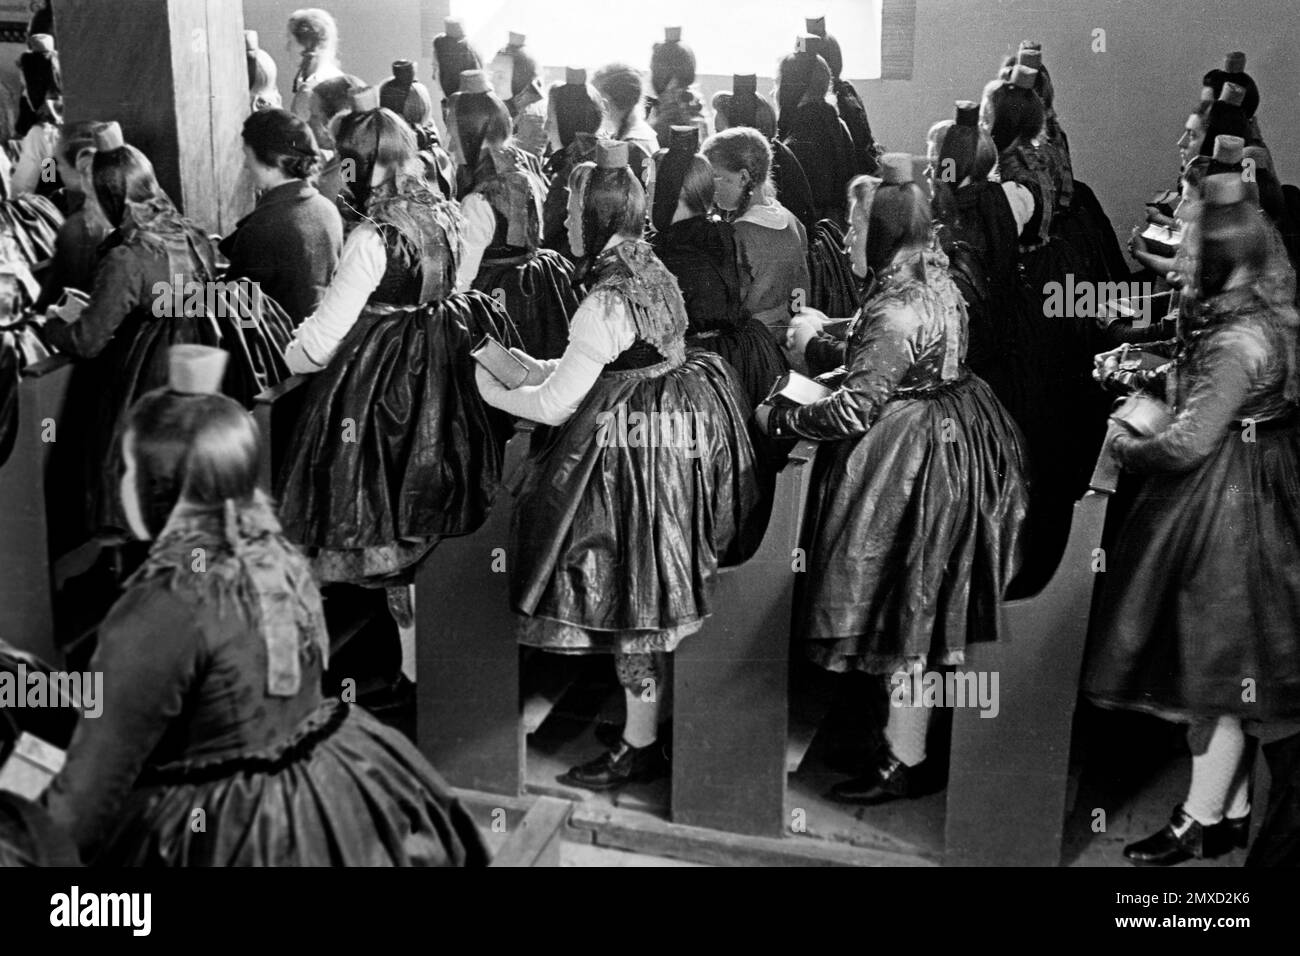 Frauen beim Gottesdienst im Schwalm-Eder-Kreis à Hessen, 1938. Femmes au service de l'église dans la région de Schwalm-Eder à Hesse, 1938. Banque D'Images